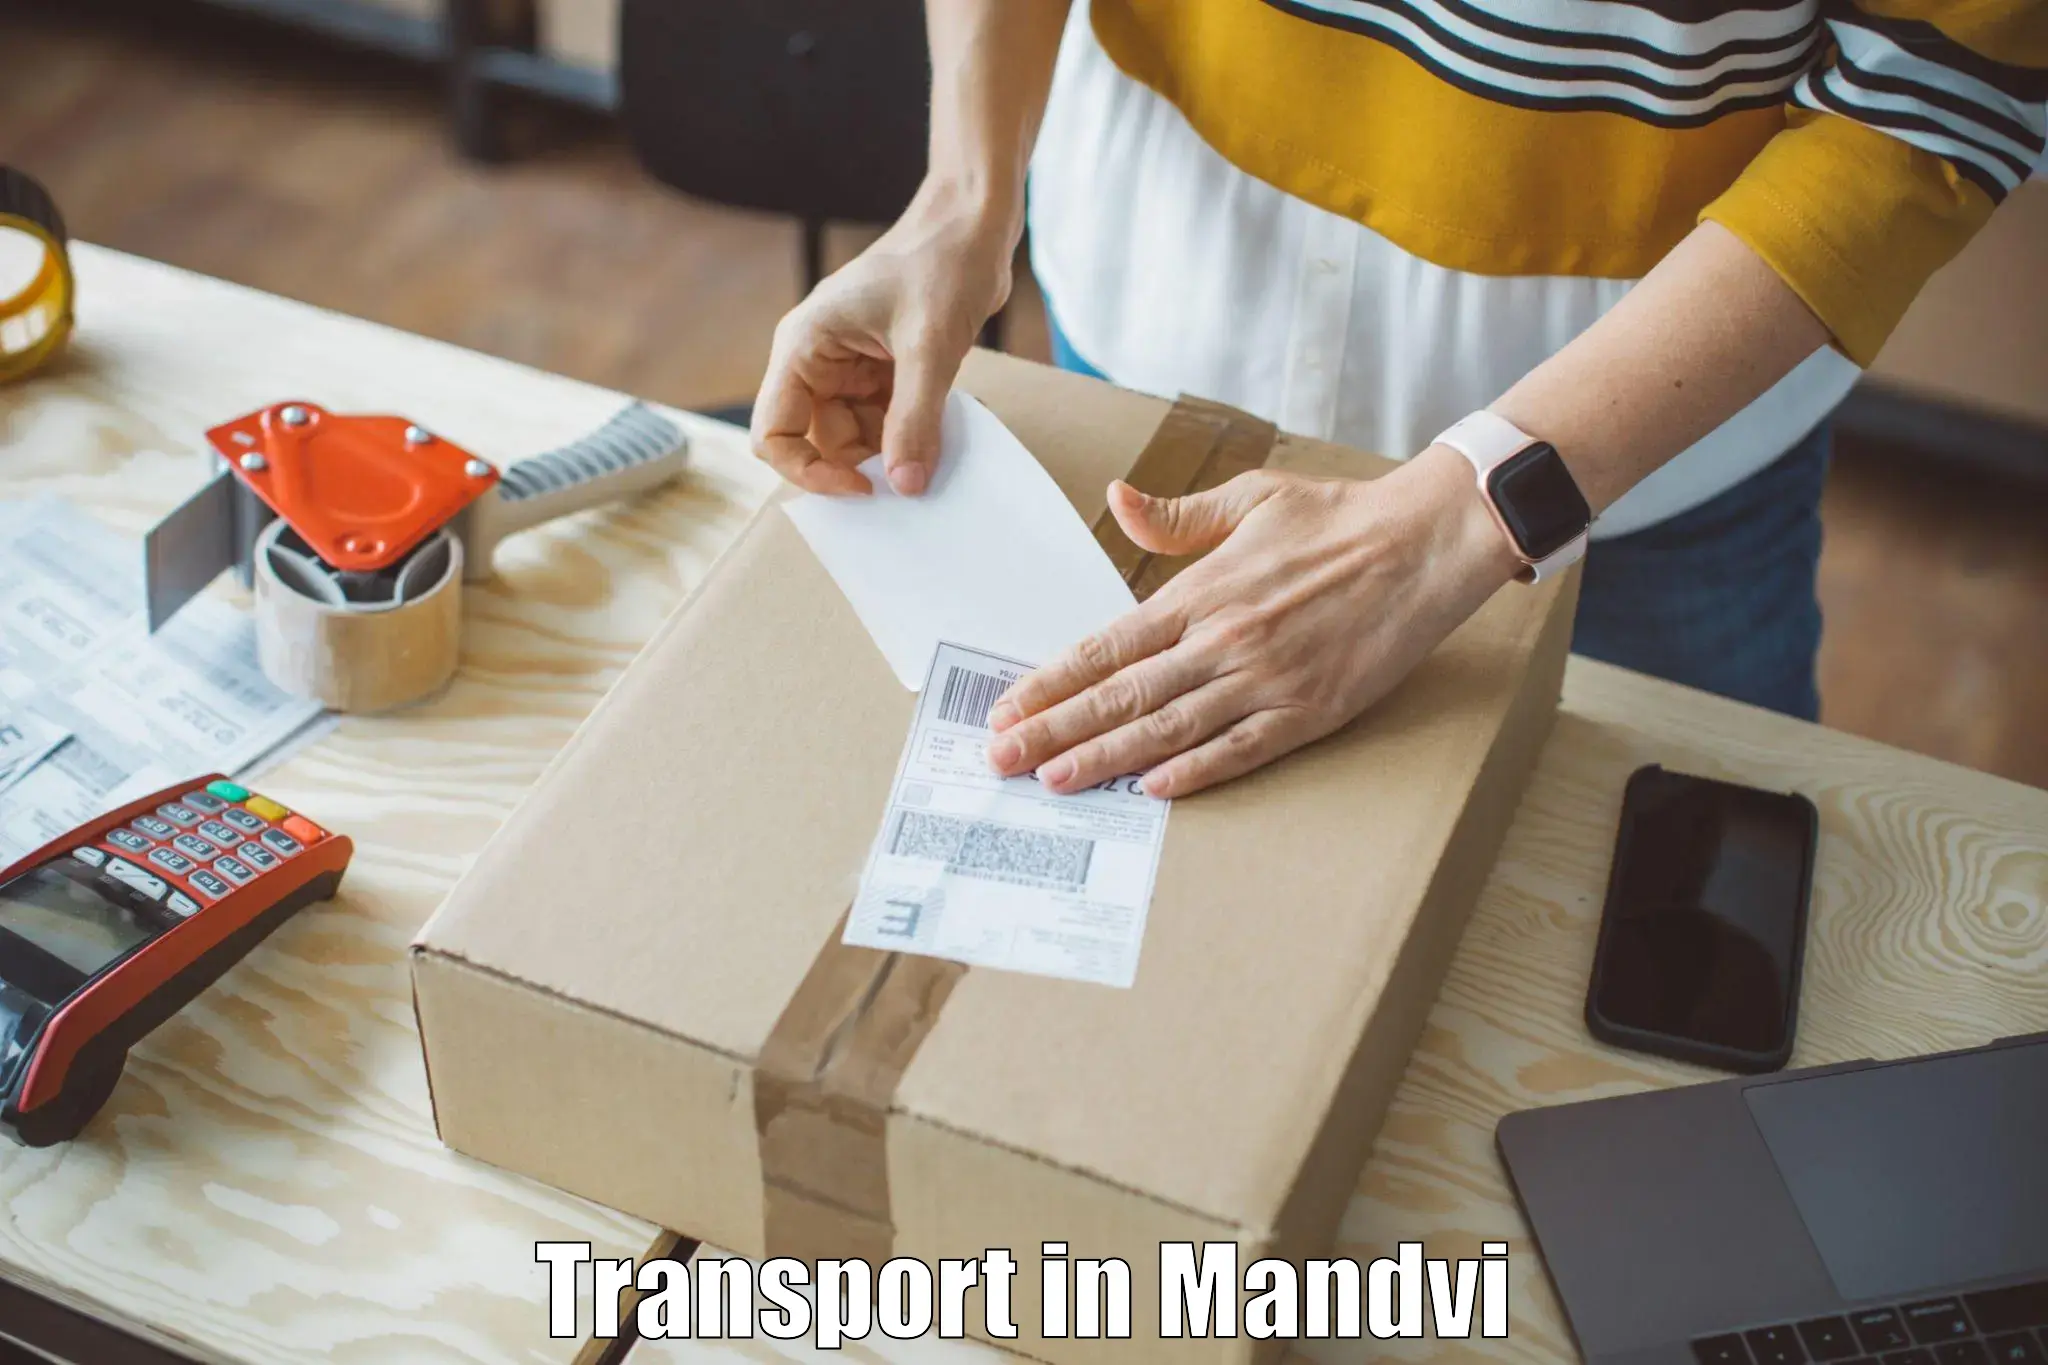 Transport in sharing in Mandvi